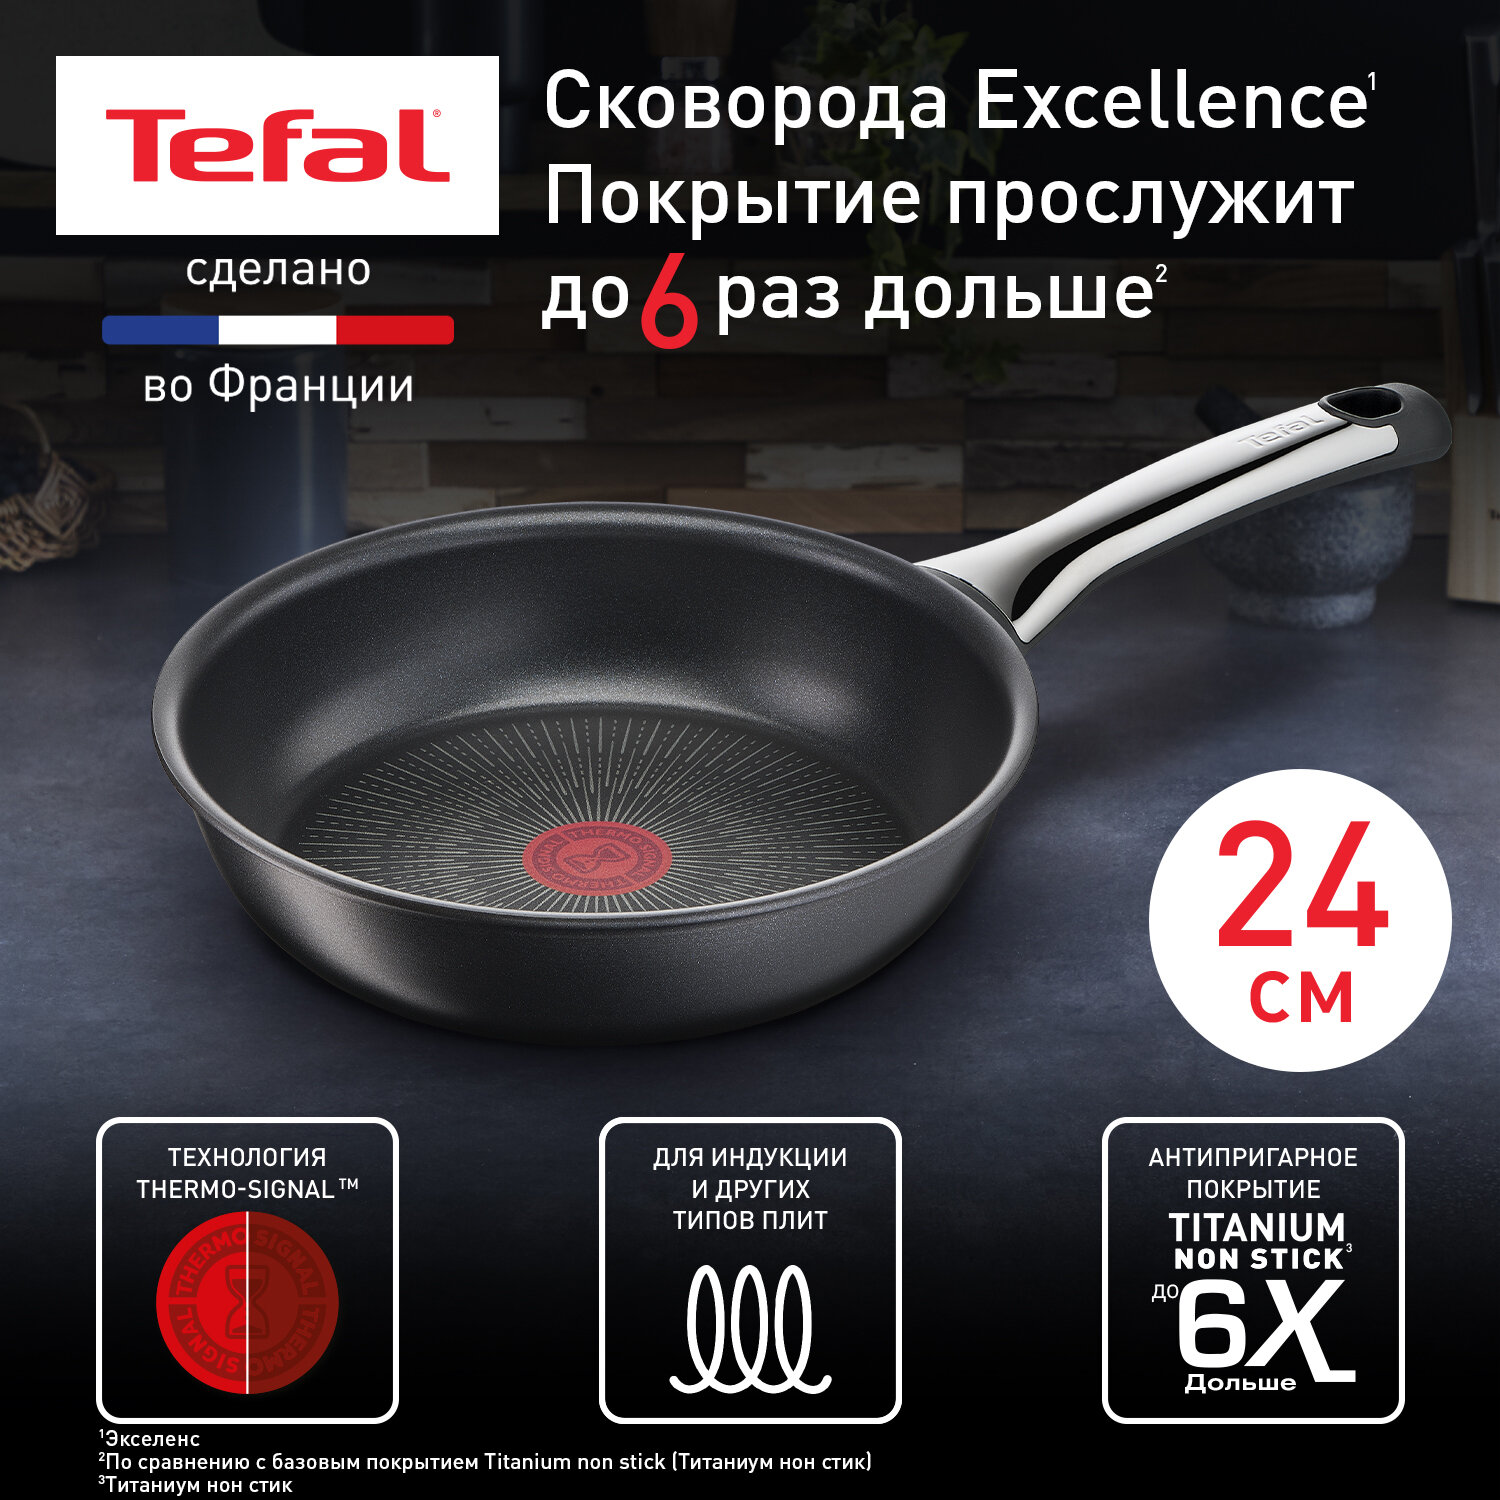 Сковорода Tefal Excellence G2690472, 24 см, с индикатором температуры, глубокая с антипригарным покрытием, подходит для индукции, сделано во Франции